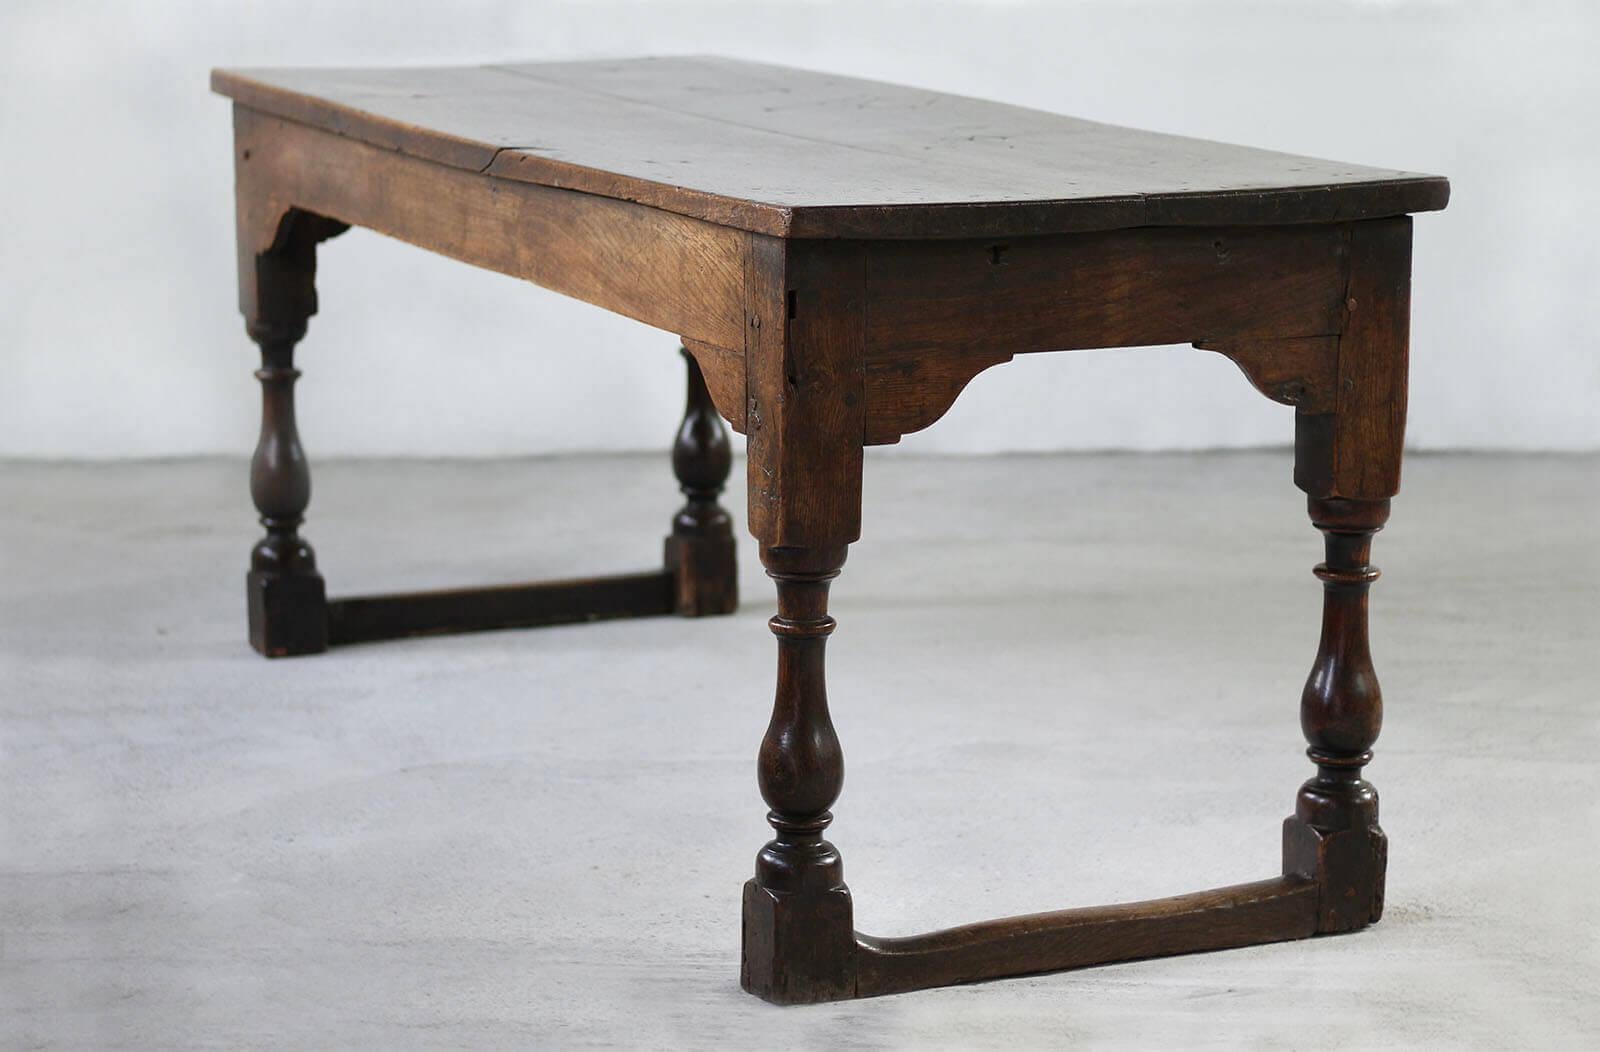 Cette magnifique table a probablement été fabriquée vers le 19e siècle en Angleterre. Elle dégage un charme particulier qui capture l'essence de l'artisanat anglais.  Au fil des années, il a acquis une patine unique qui témoigne de son parcours dans